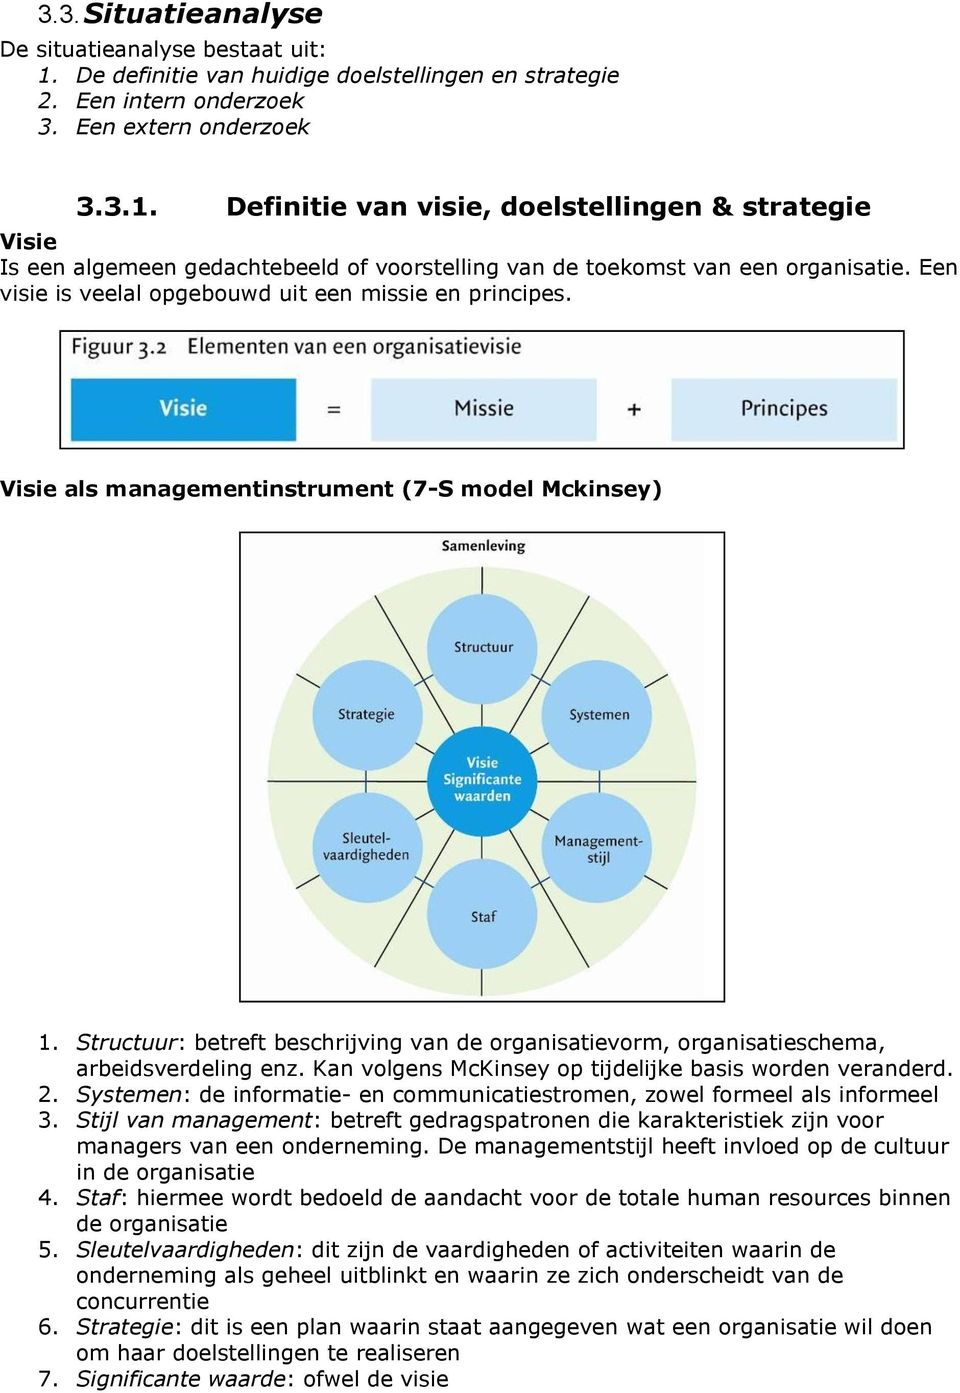 Structuur: betreft beschrijving van de organisatievorm, organisatieschema, arbeidsverdeling enz. Kan volgens McKinsey op tijdelijke basis worden veranderd. 2.